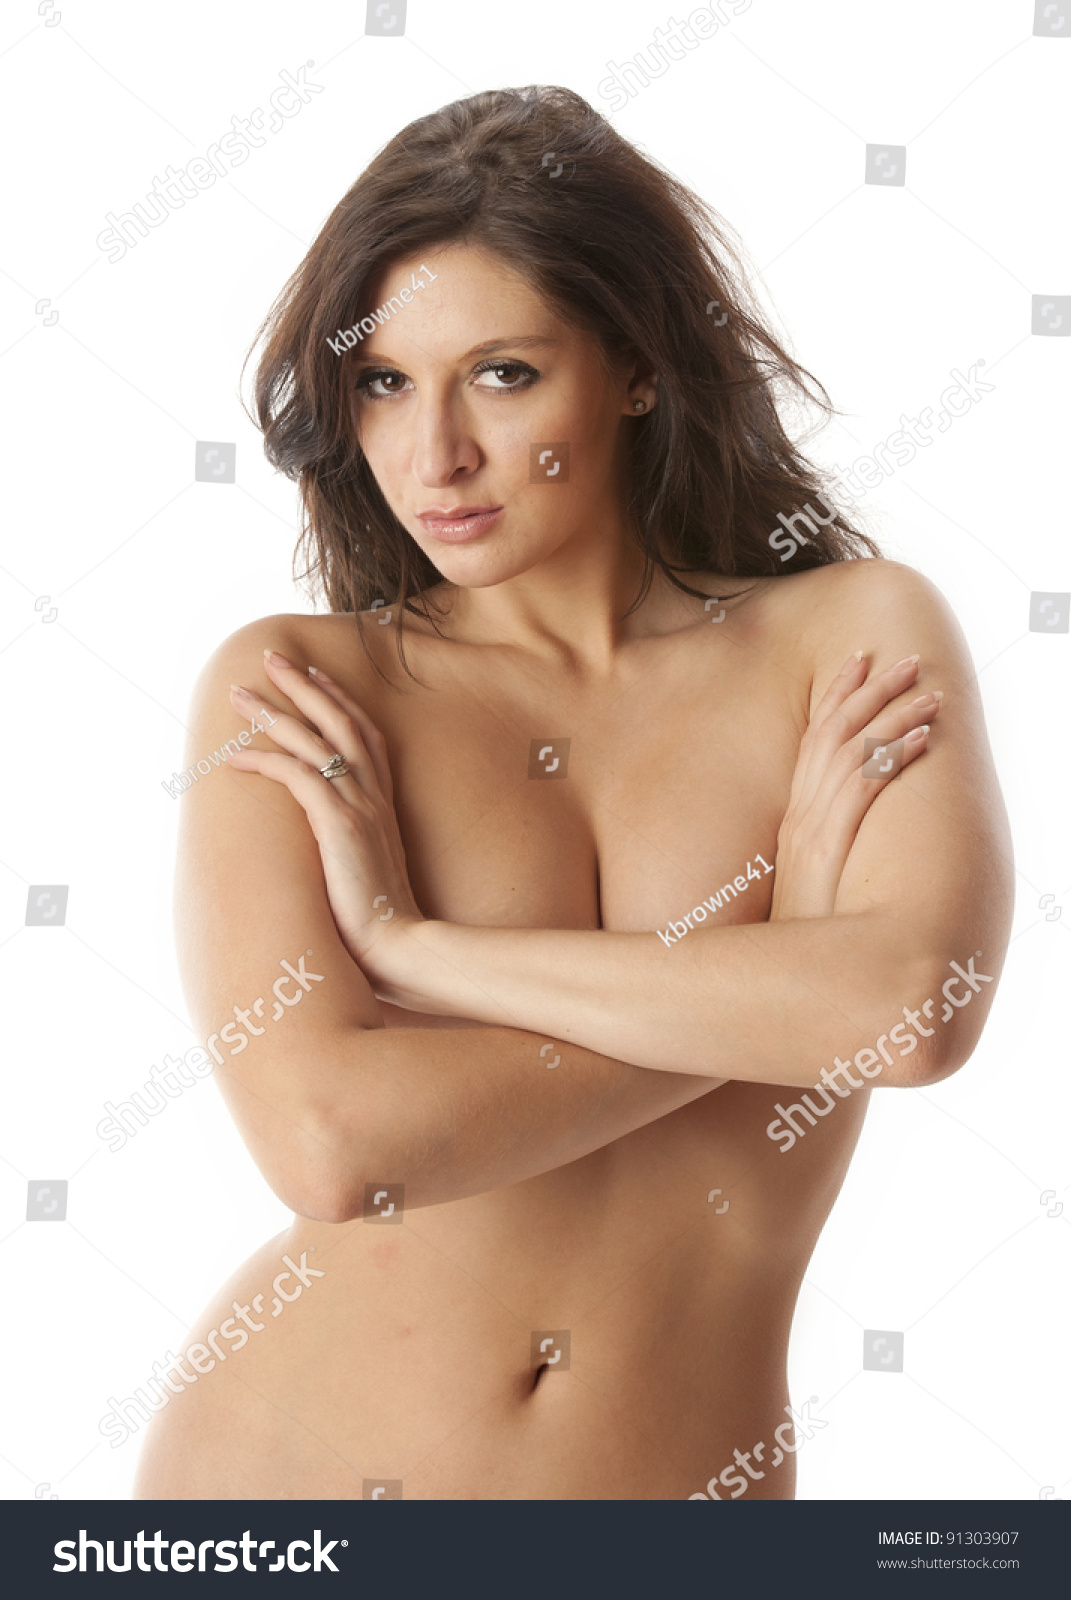 Nude photos - woman